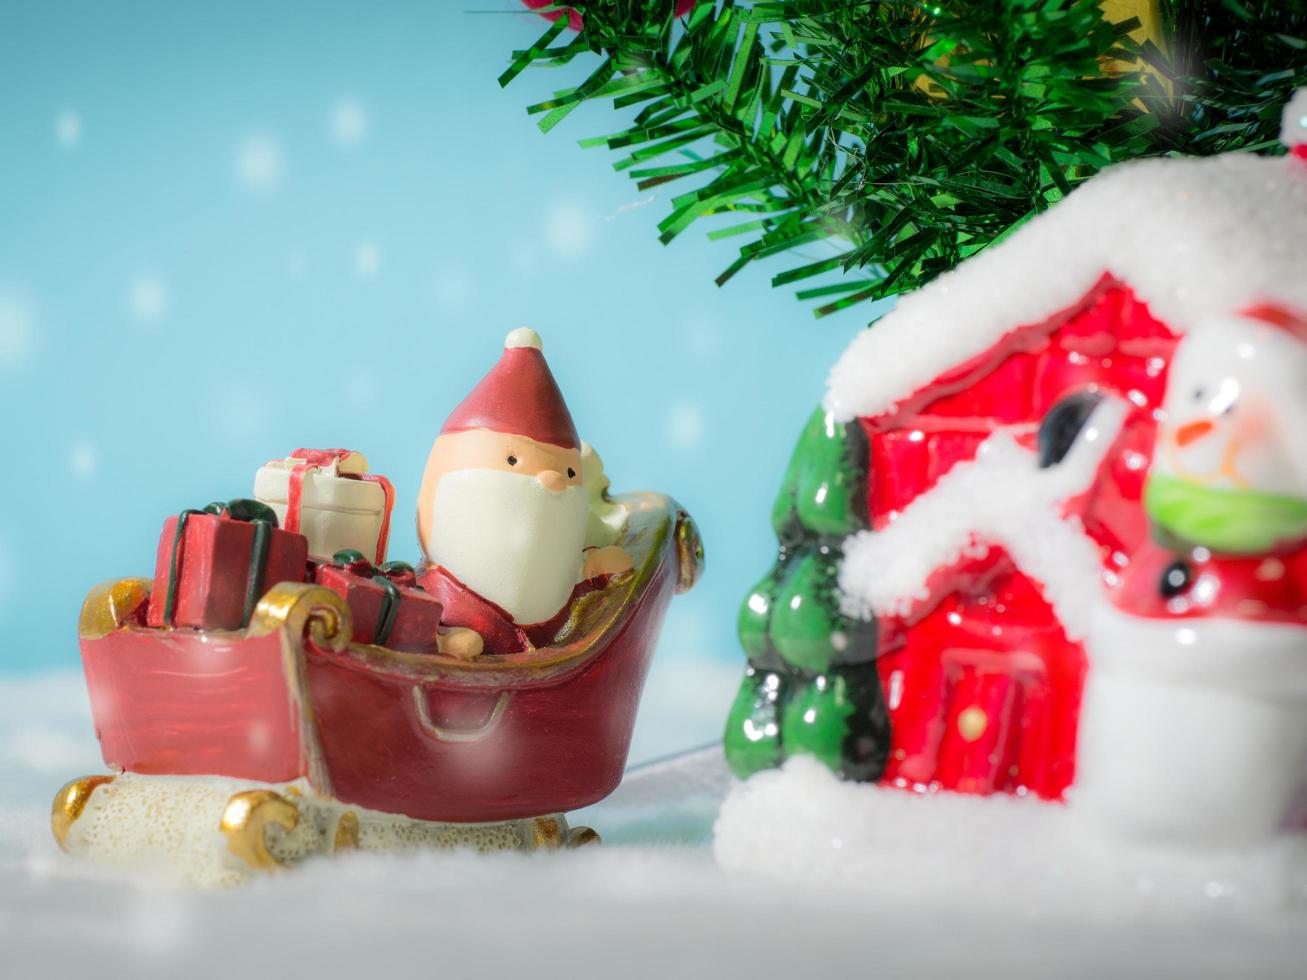 glücklicher weihnachtsmann mit geschenkbox auf dem schneeschlitten, der zum haus geht. in der nähe des hauses haben schneemann und weihnachtsbaum. weihnachtsmann und haus im schnee. weihnachts- und frohes neues jahrkonzept. foto